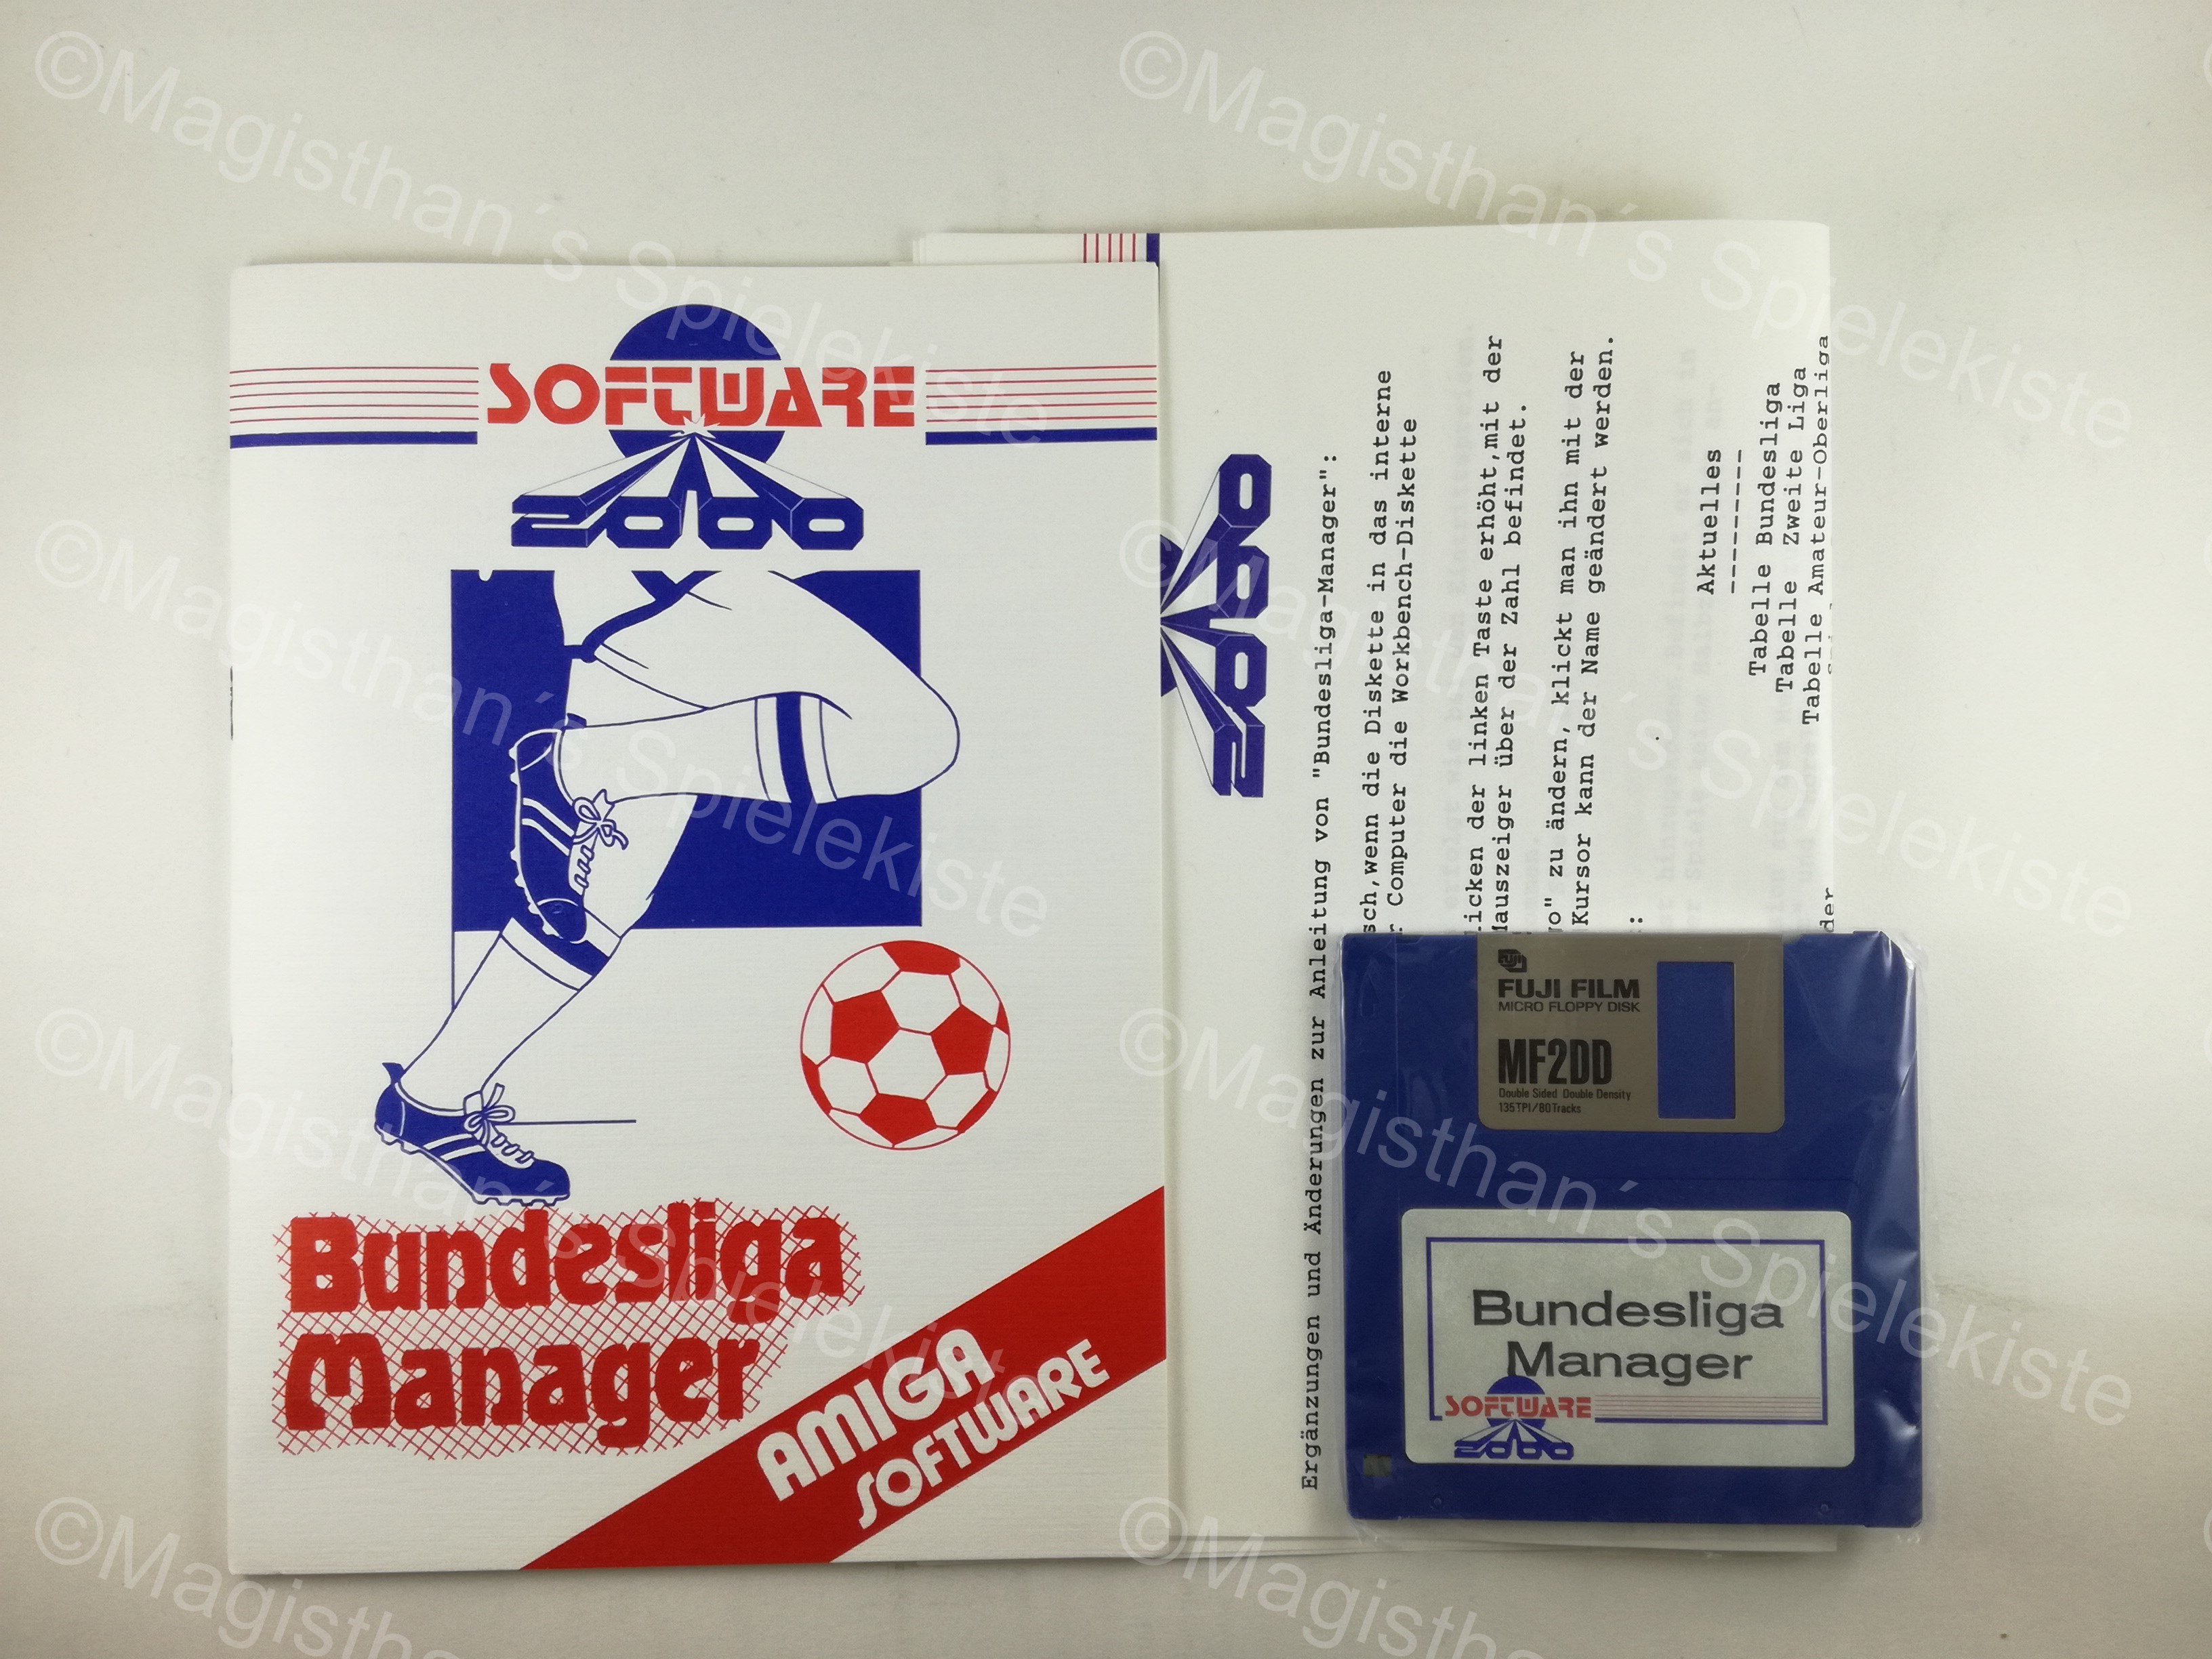 BundesligaManagerAmigaWeiG_eBox2.jpg